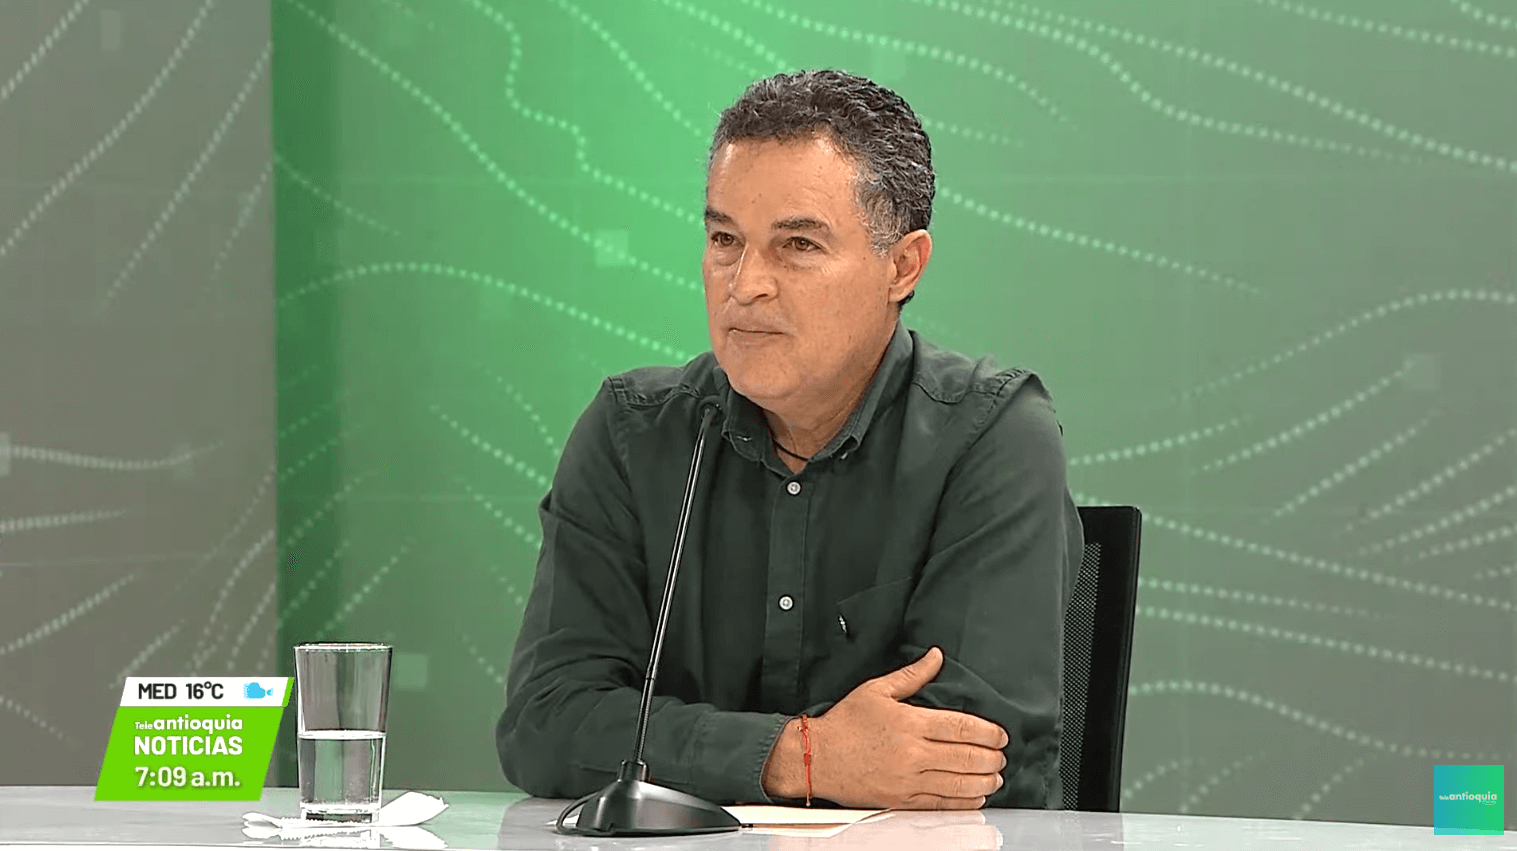 Entrevista con Aníbal Gaviria Correa, gobernador de Antioquia